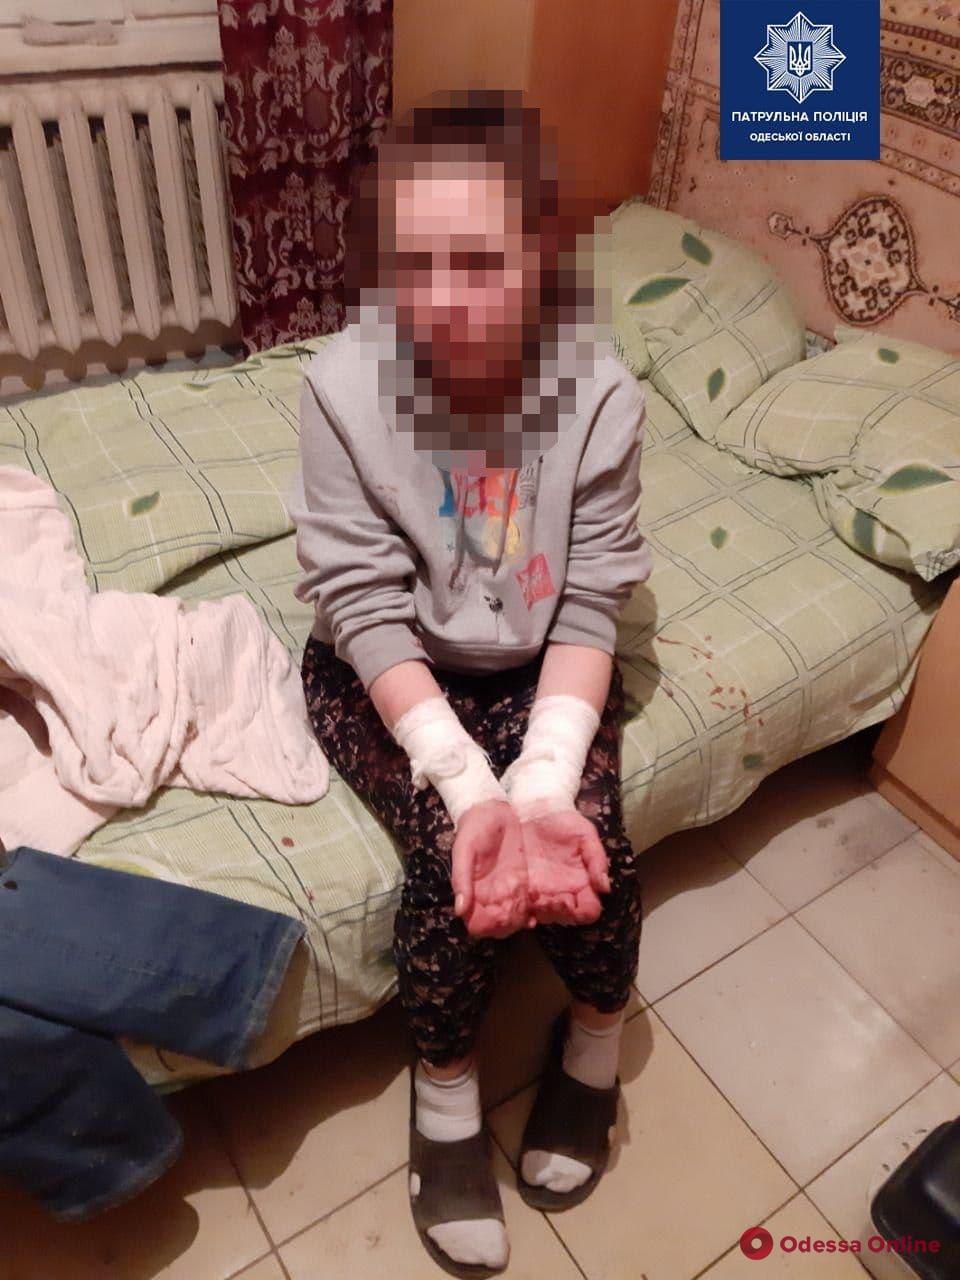 Одесские патрульные спасали вскрывшую себе вены женщину